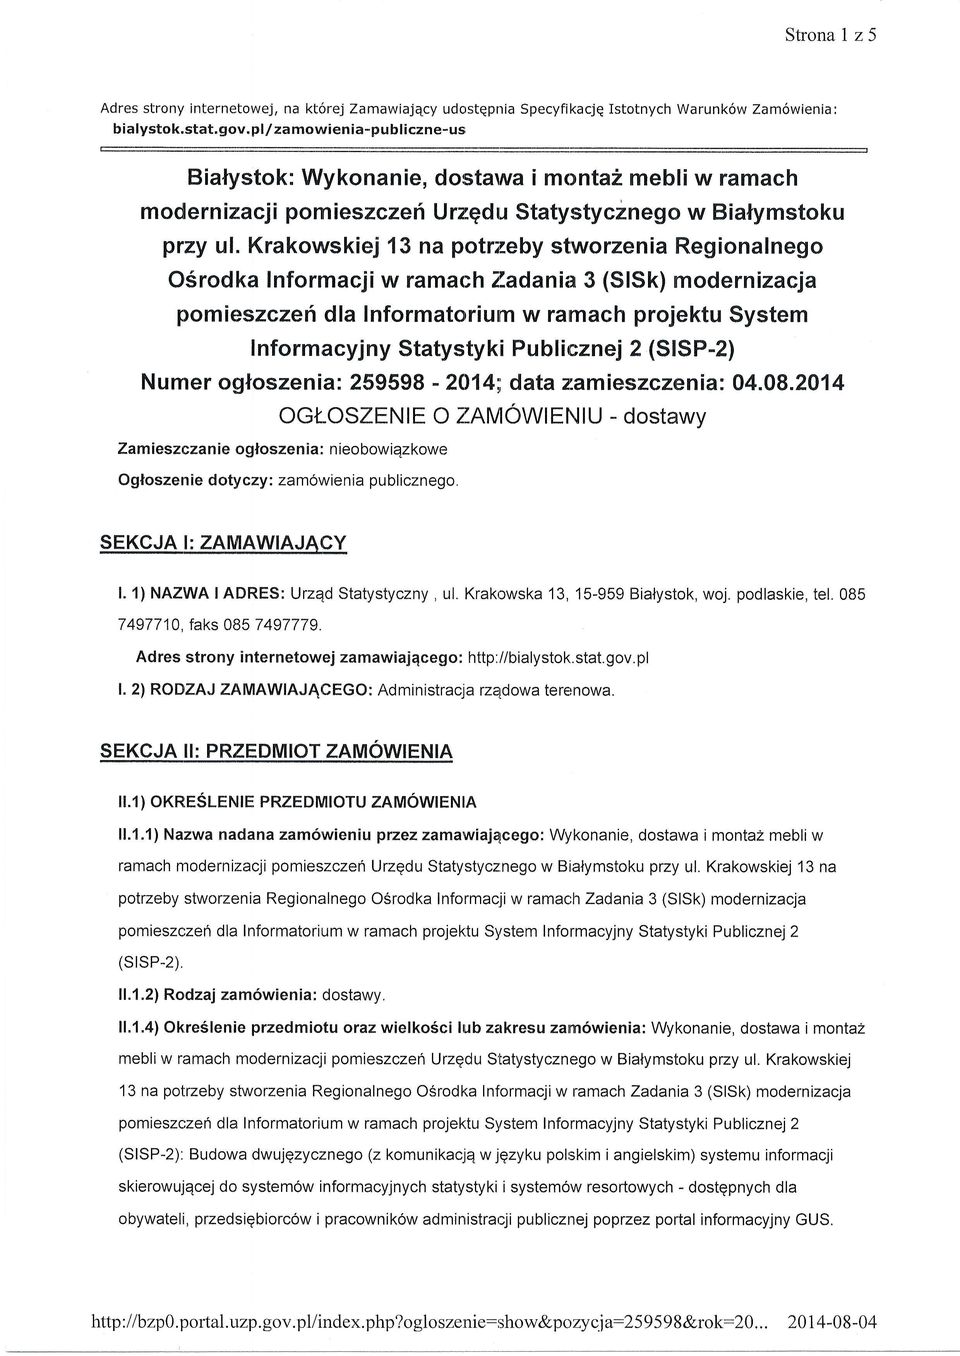 Krakowskiej 13 na potrzeby stworzenia Regionalnego O6rodka Informacji w ramachzadania 3 (SlSk) modernizacja pomieszczert dla Informatorium w ramach projektu System Informacyjny Statystyki Publicznei